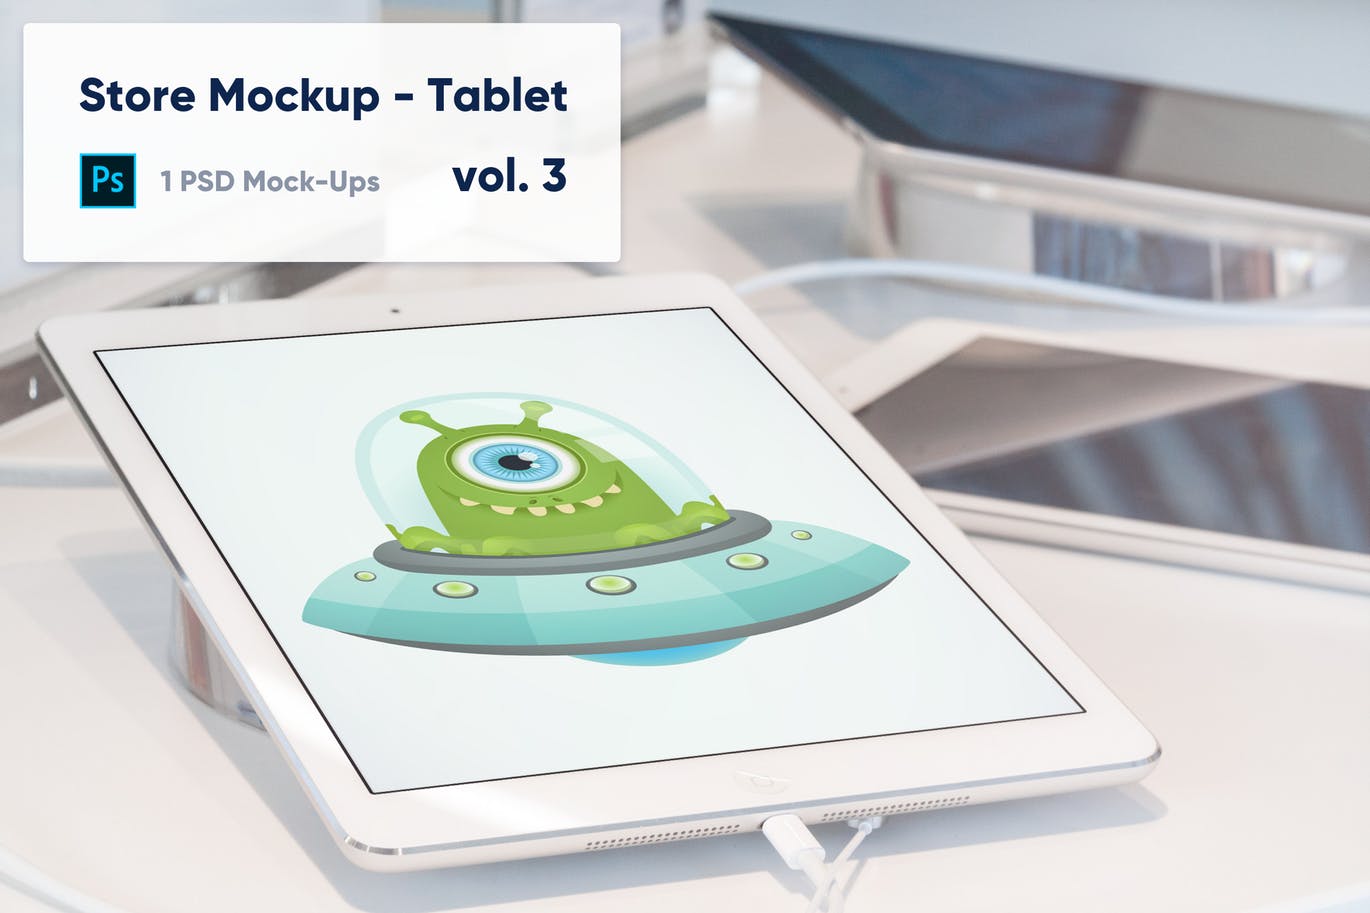 零售店场景平板电脑屏幕预览第一素材精选样机模板v3 Tablet Mockup in the Store – Vol. 3插图